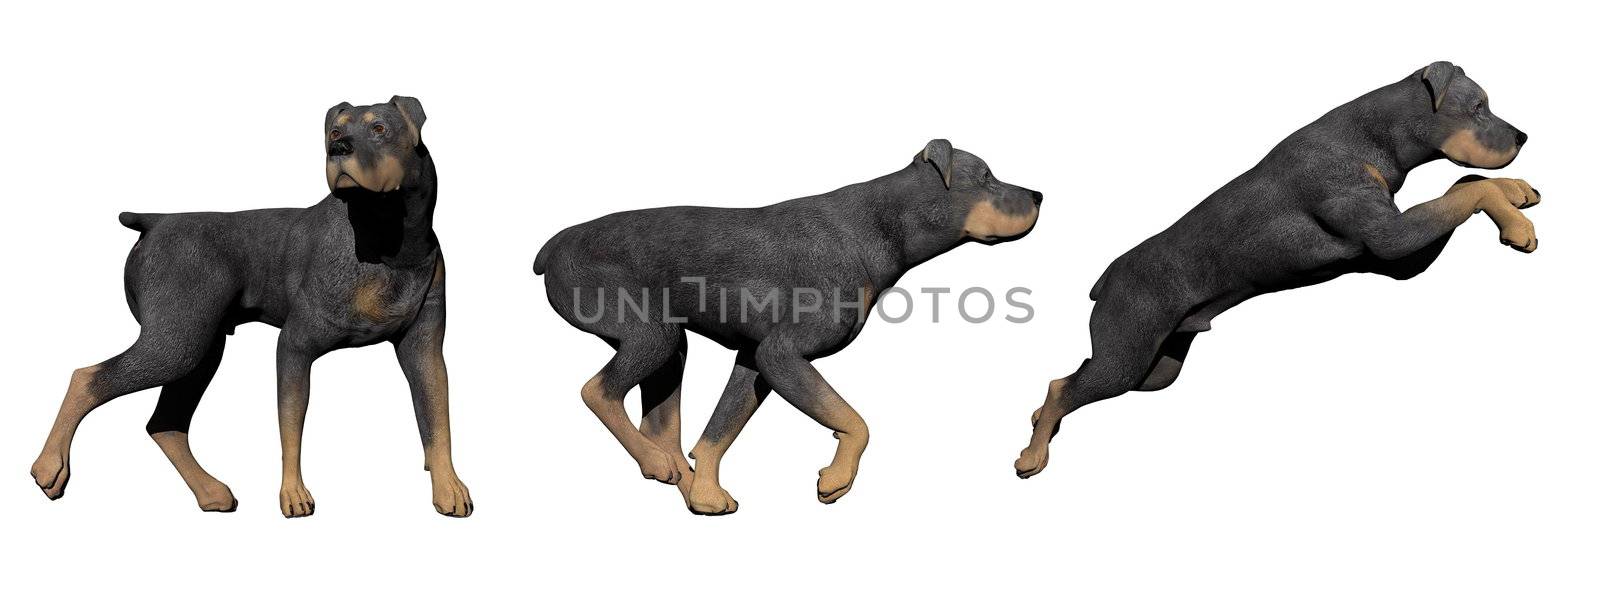 Rottweiler dog - 3D render by Elenaphotos21